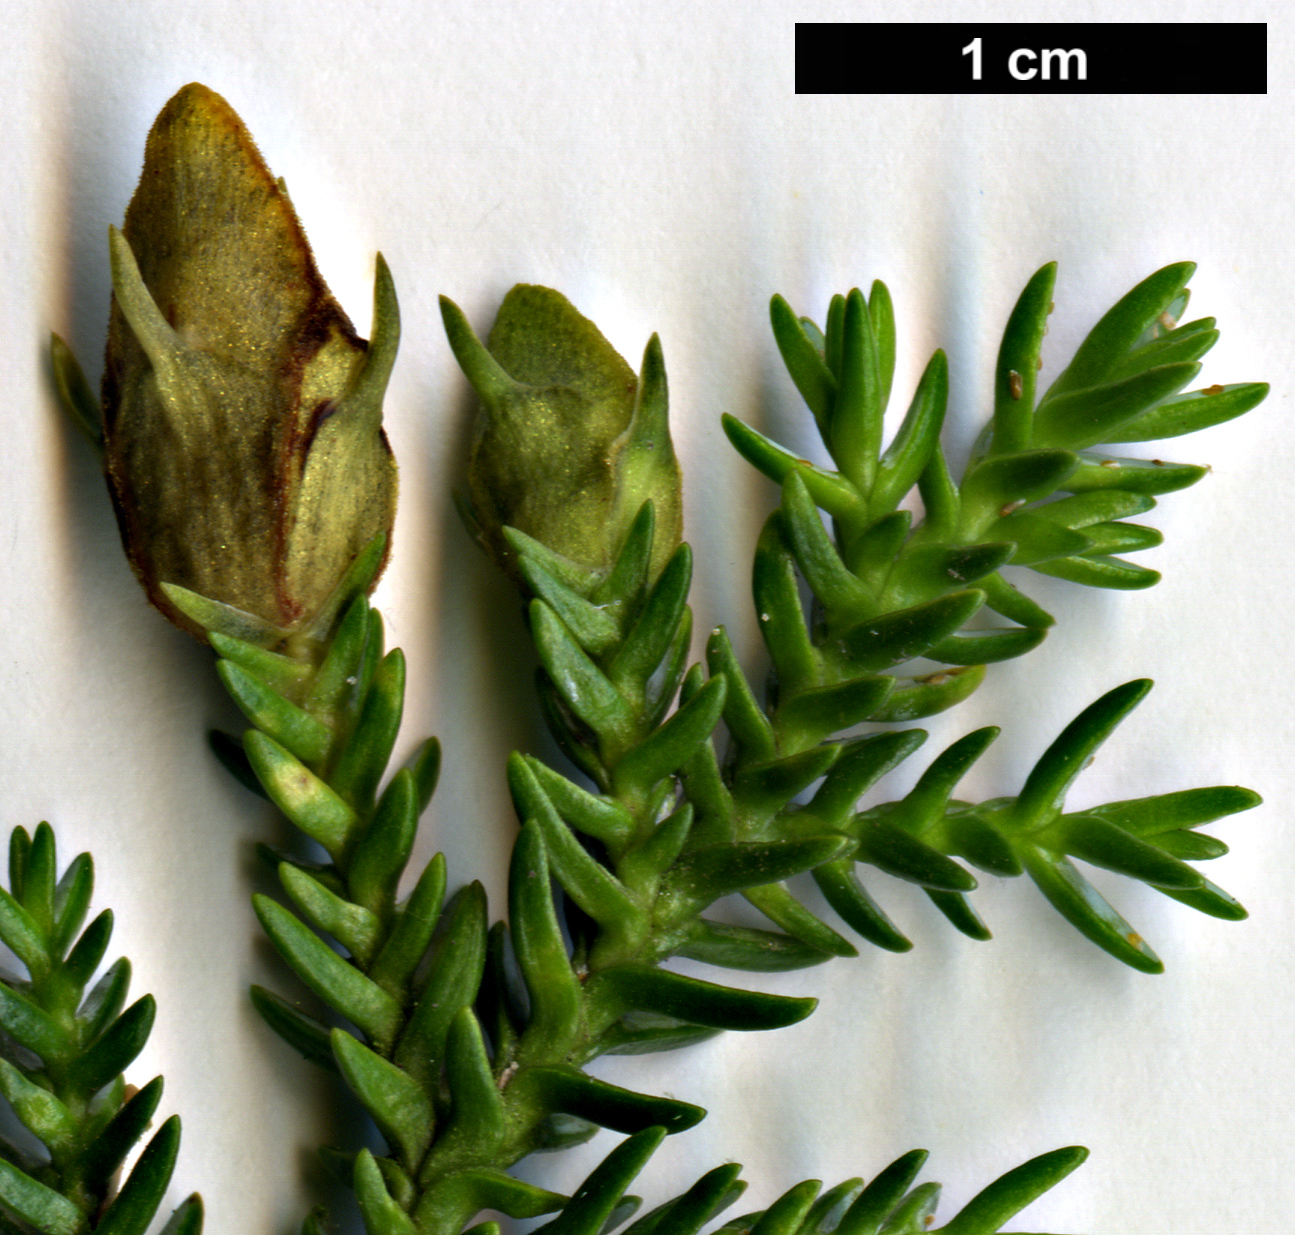 High resolution image: Family: Cupressaceae - Genus: Pilgerodendron - Taxon: uviferum